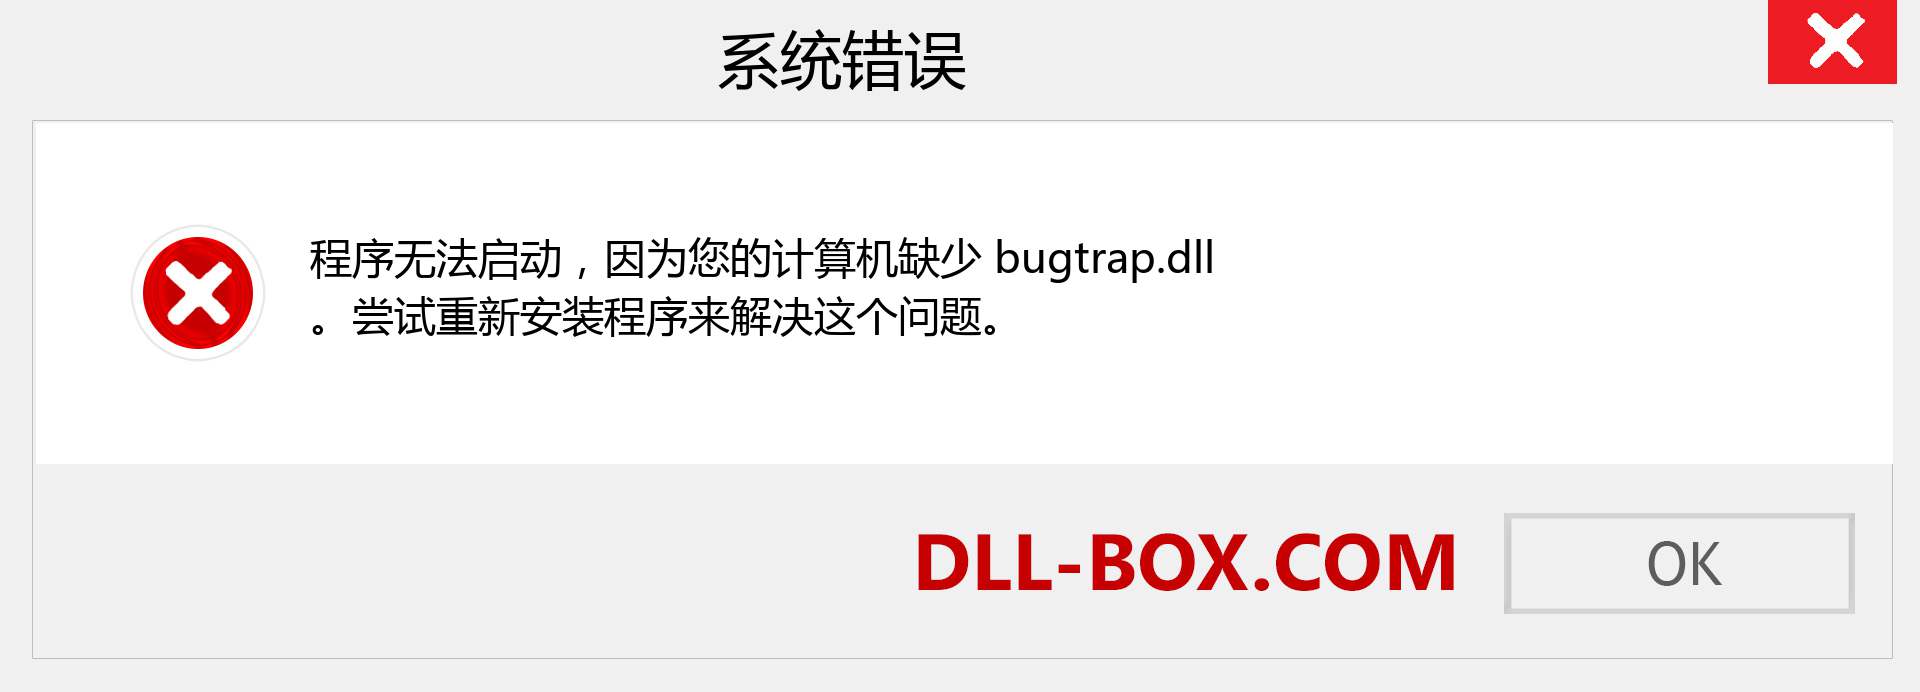 bugtrap.dll 文件丢失？。 适用于 Windows 7、8、10 的下载 - 修复 Windows、照片、图像上的 bugtrap dll 丢失错误